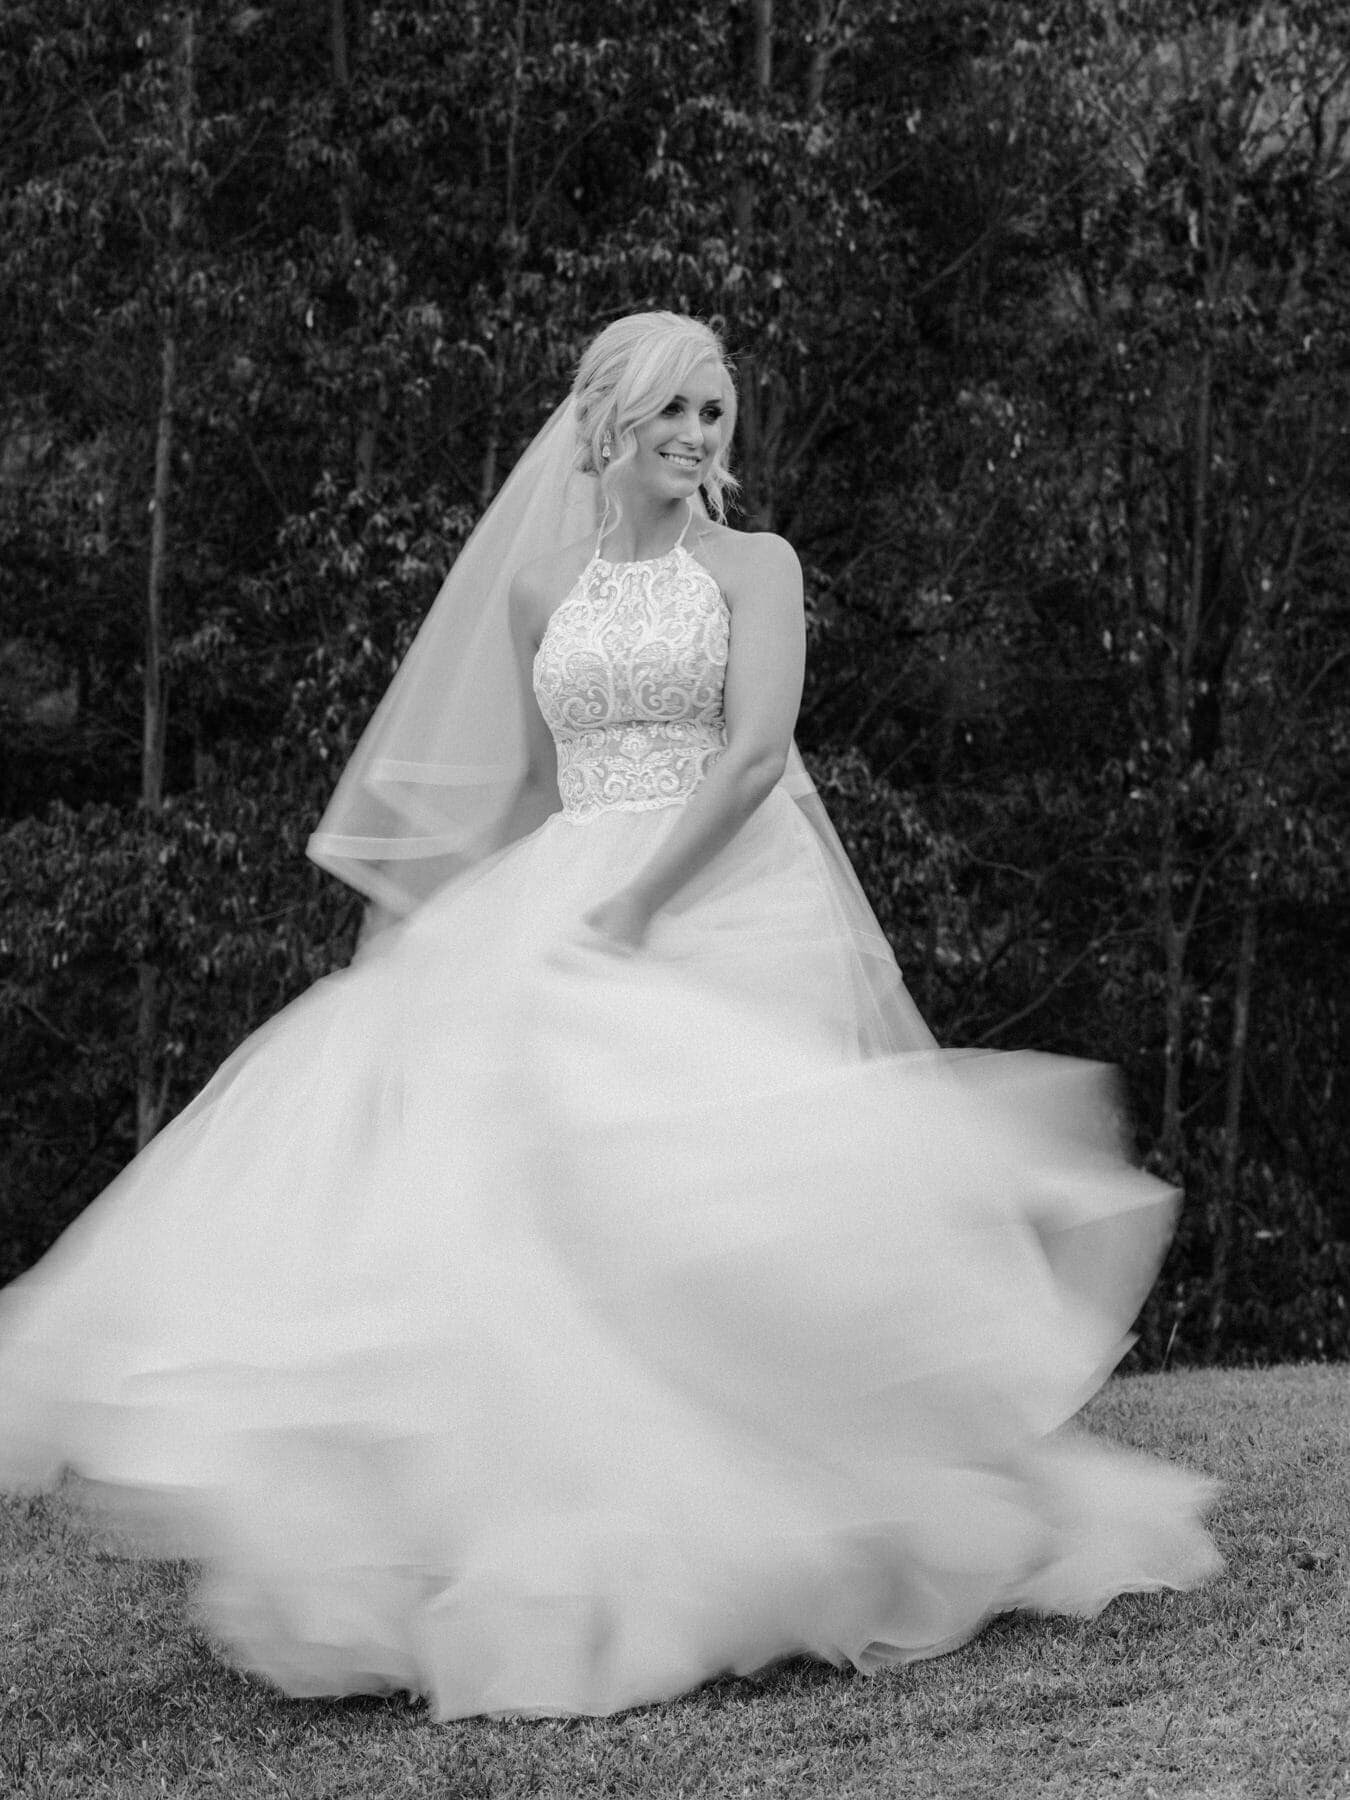 Bride on her wedding day at Austinvilla Estate